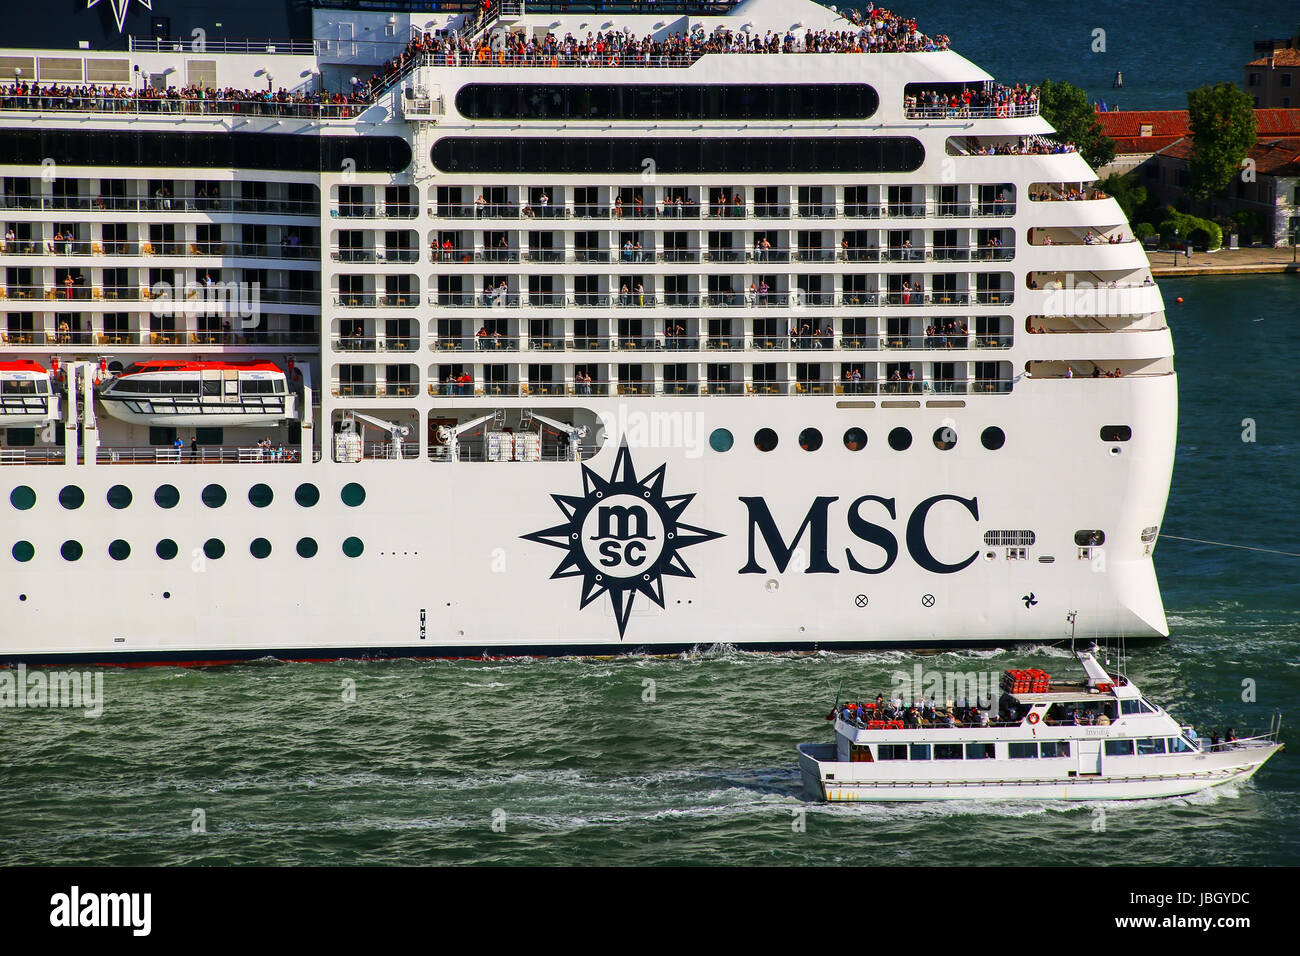 Dettaglio della crociera MSC nave in movimento attraverso la San Marco Canal a Venezia, Italia. MSC è il secondo più grande società di trasporto di linea in termini di contenitore vesse Foto Stock